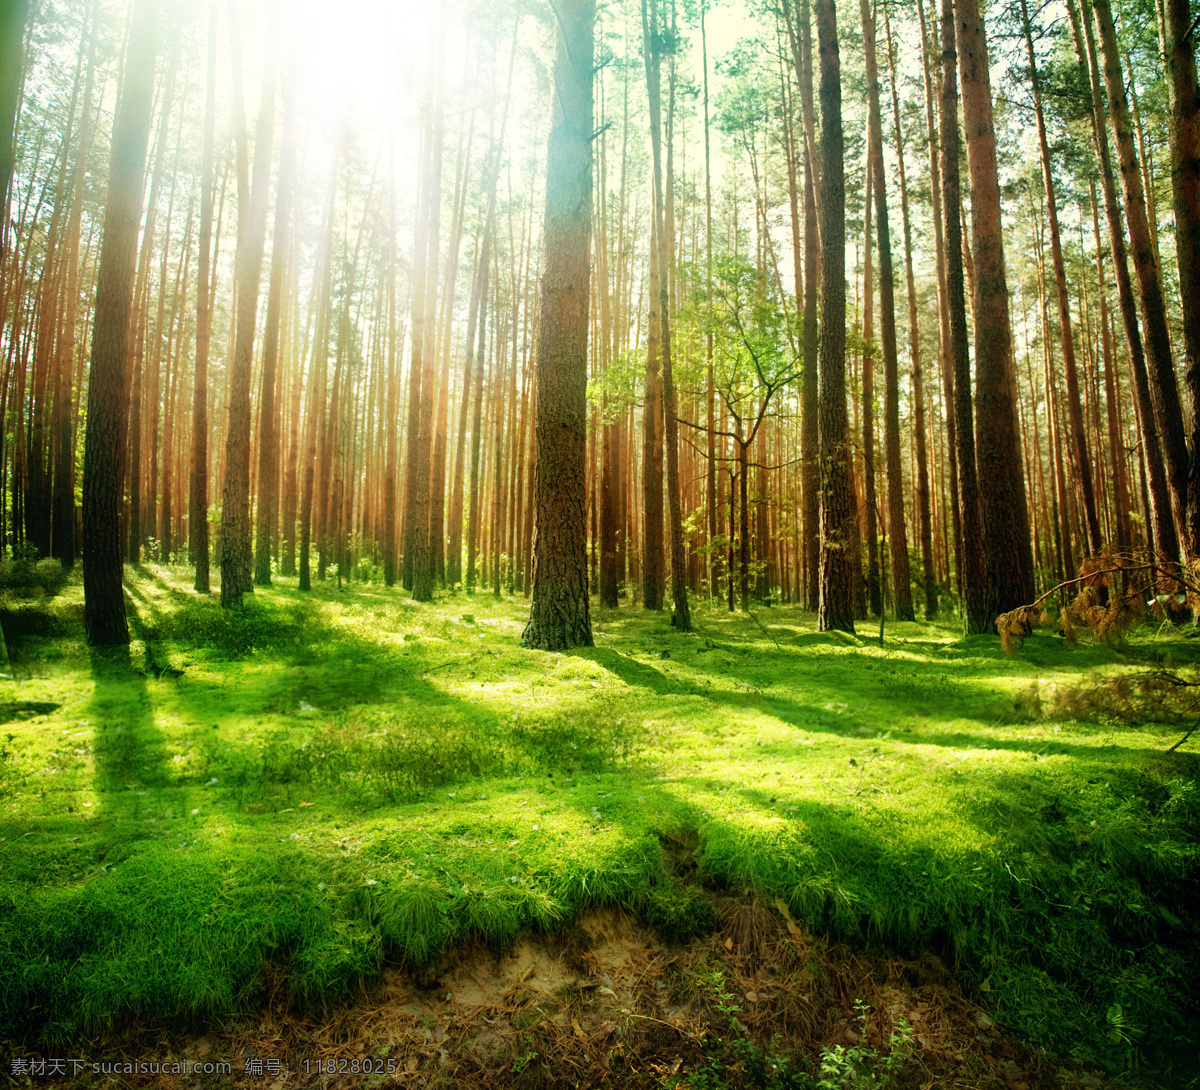 迷雾森林之光 阳光 光线 森林 树林 迷雾 绿草 自然风景 自然景观